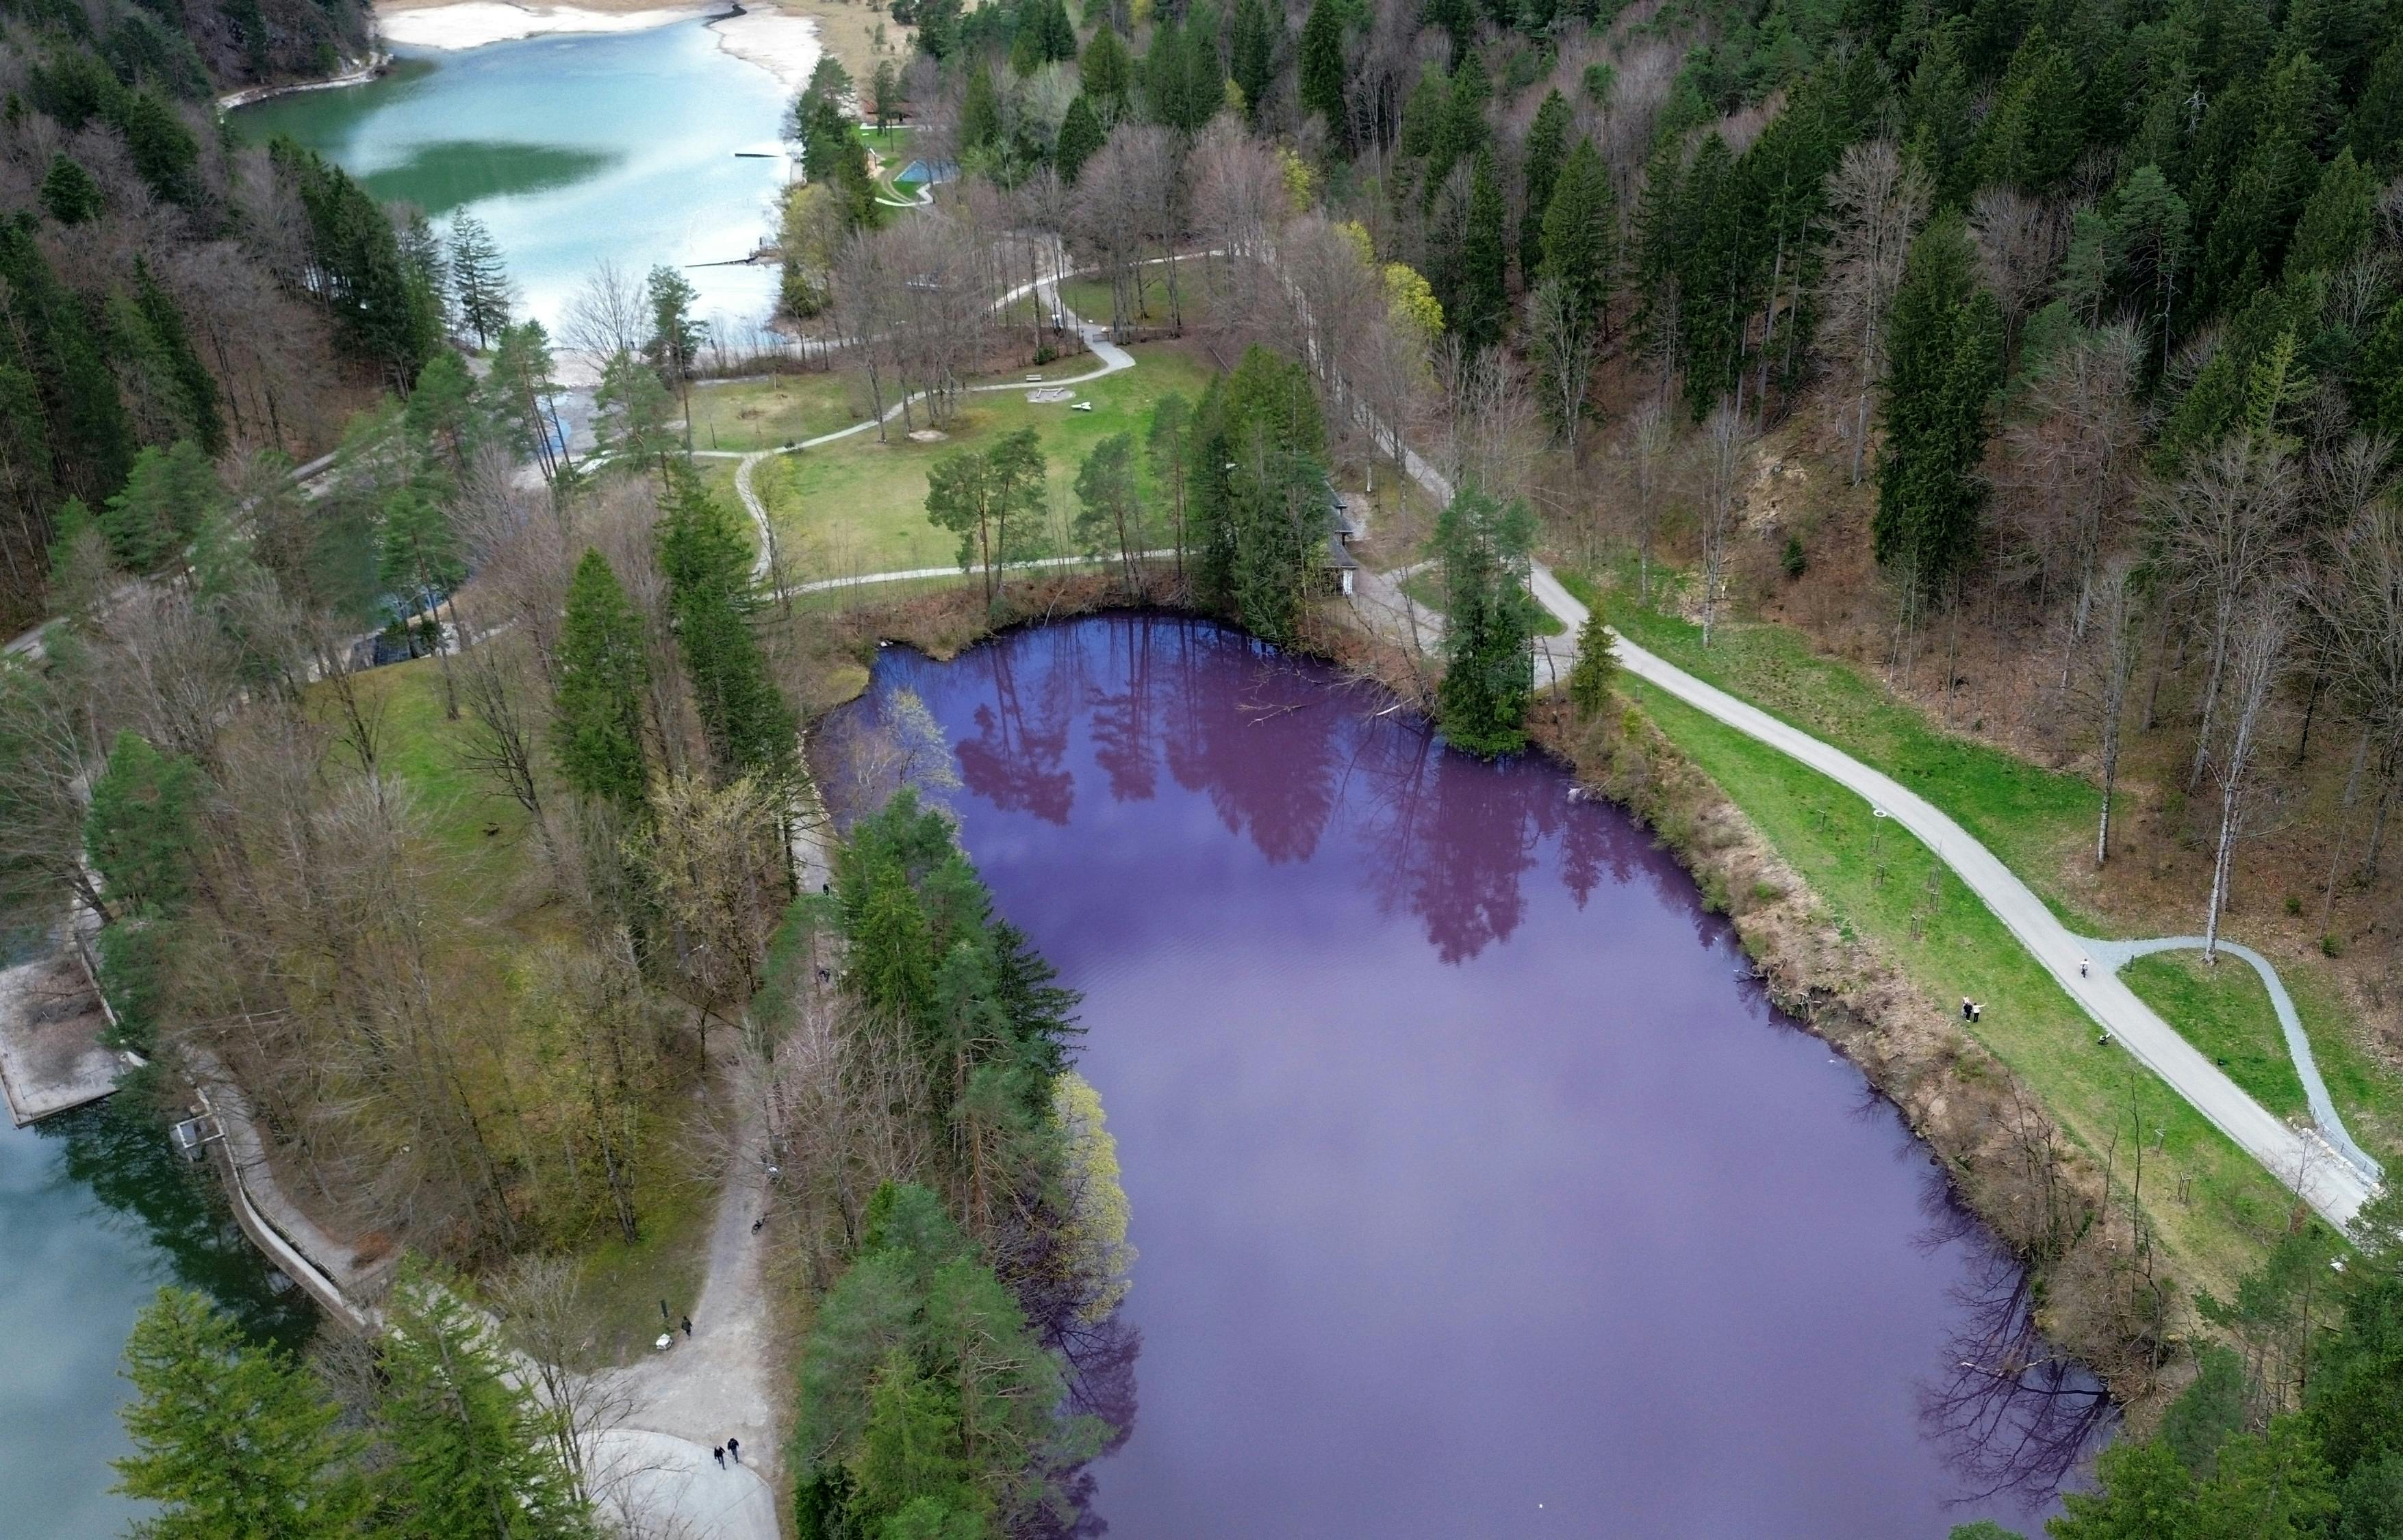 Allgäu-søen i Tyskland har fået en farve, som vand normalt ikke har. 